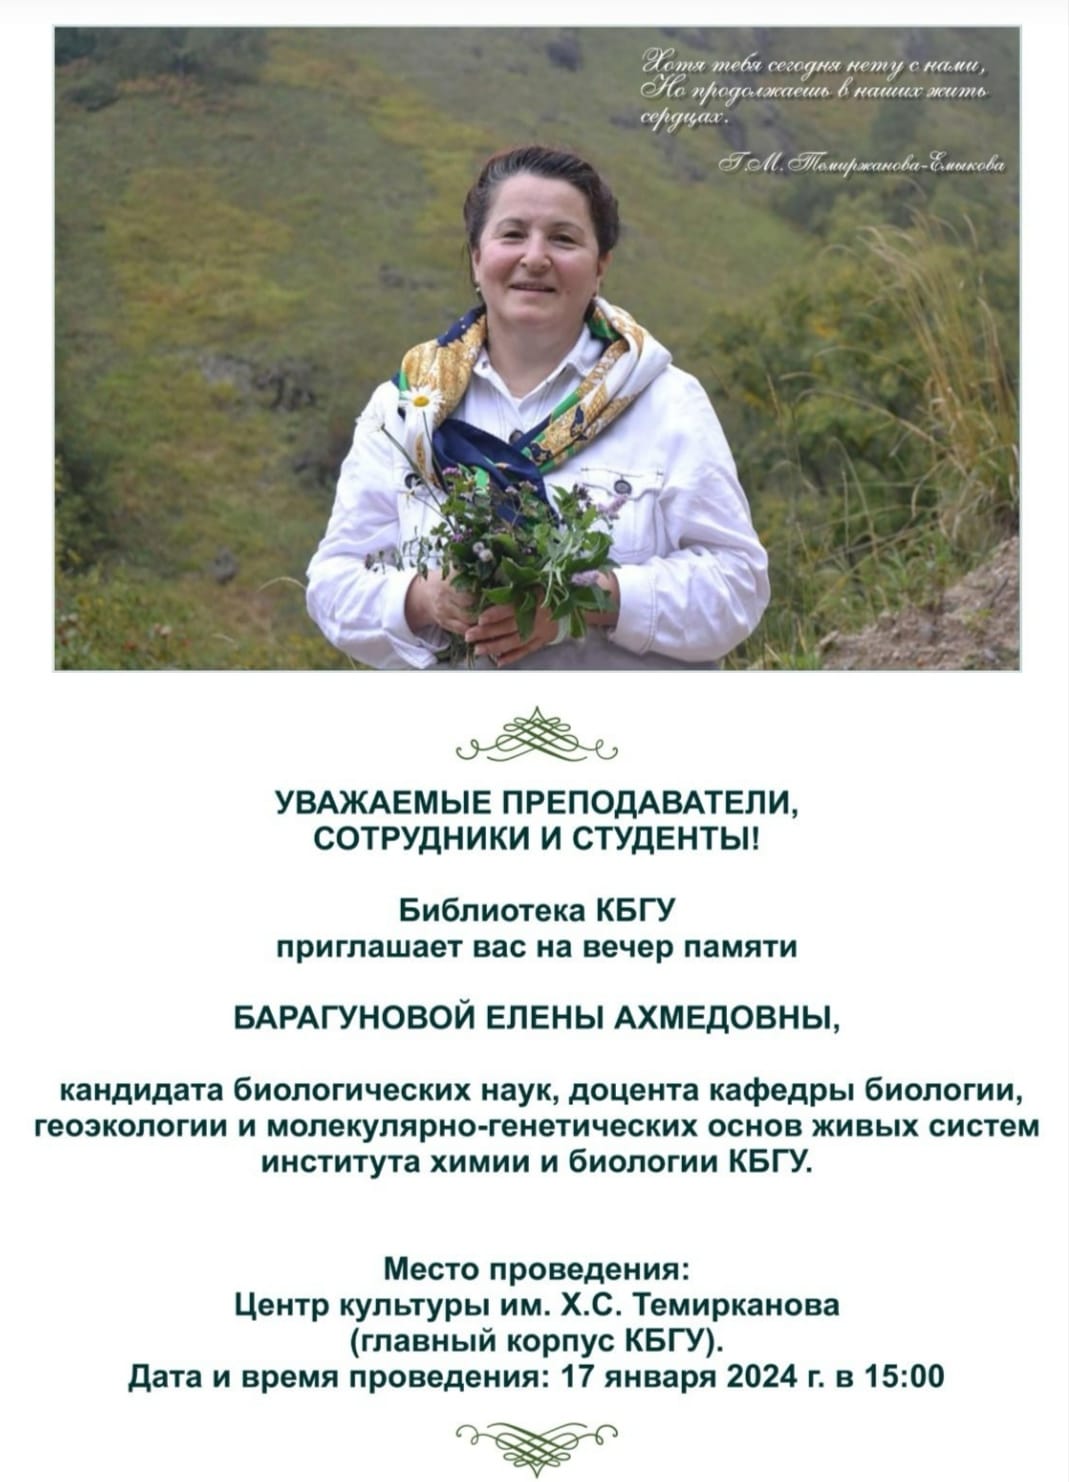 17 января 2024 года - вечер памяти Елены Ахмедовны Барагуновой